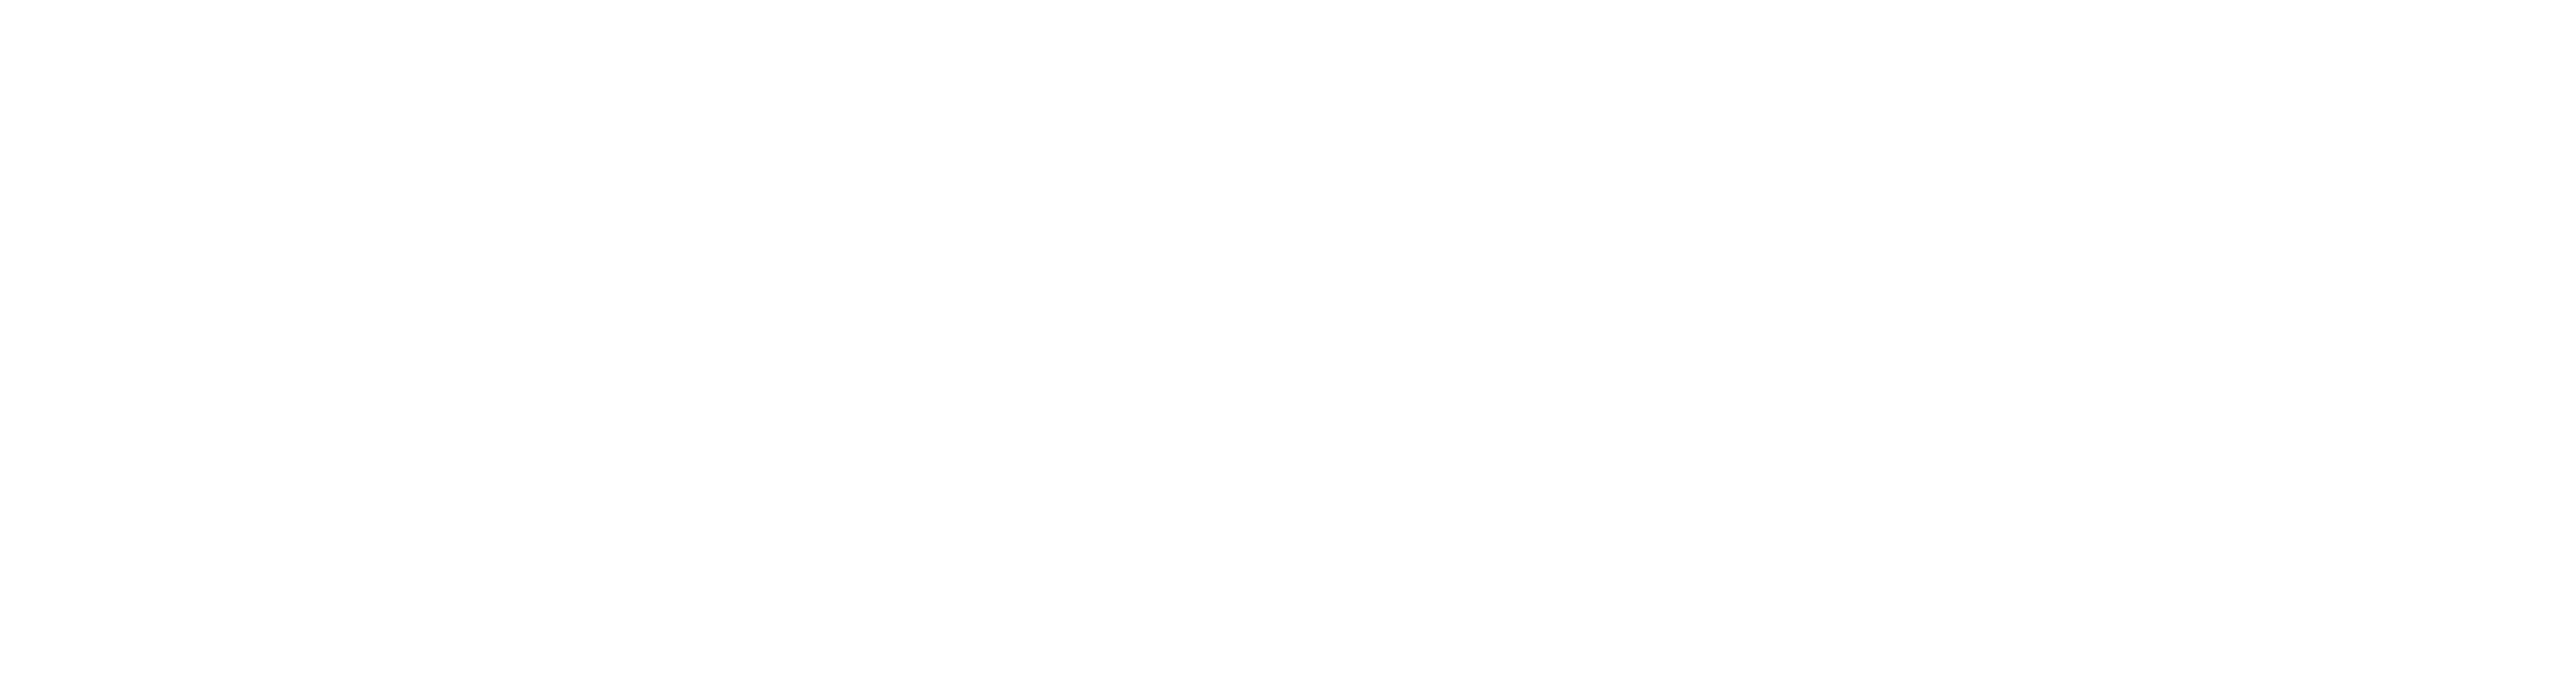 Obi-Wan Kenobi: A Jedi's Return logo